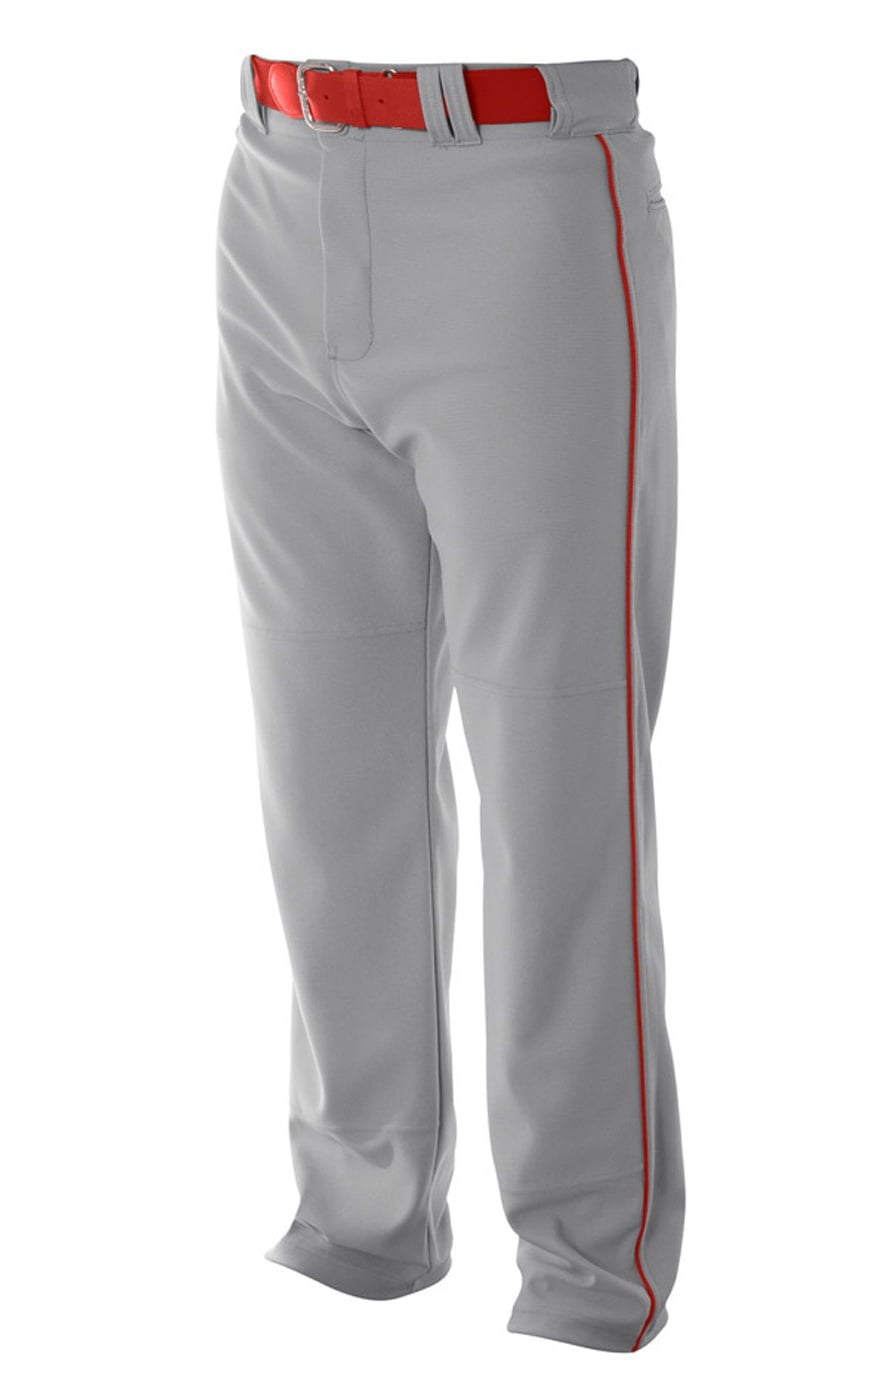 Pro Style Open Bottom Baggy Cut Baseball Pants - Walmart.com